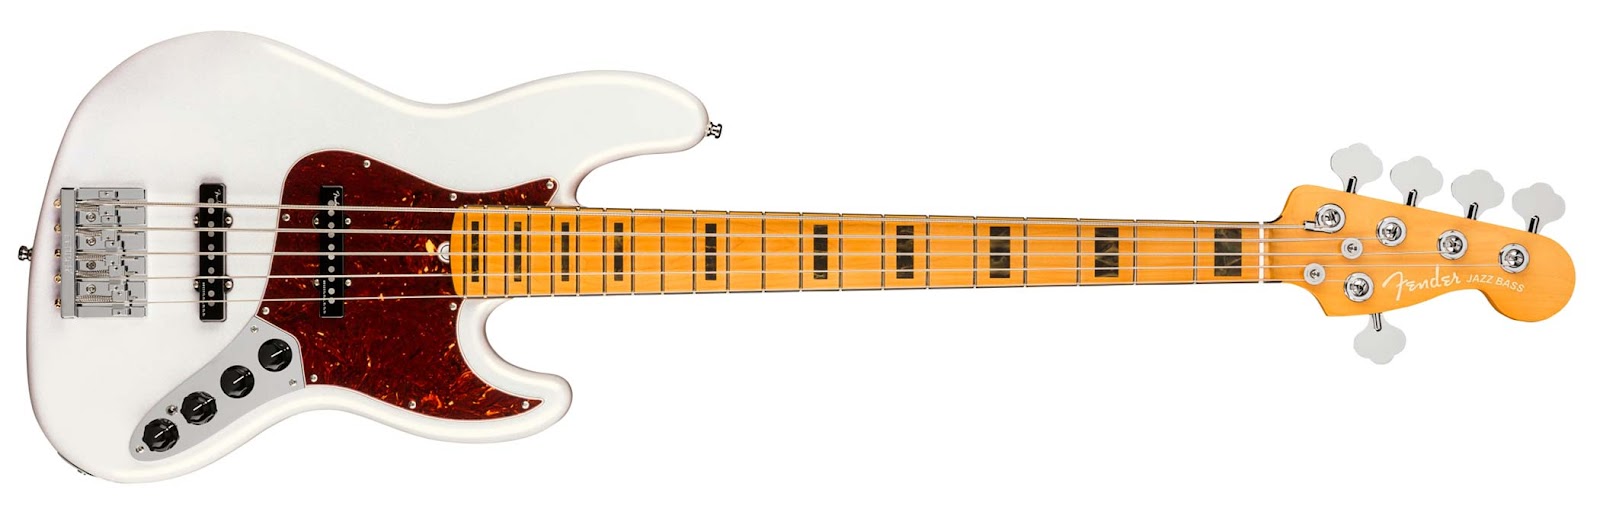 รีวิวเบส The Fender® American Ultra Jazz Bass® V – “Some Ultra Cool Updates” 1